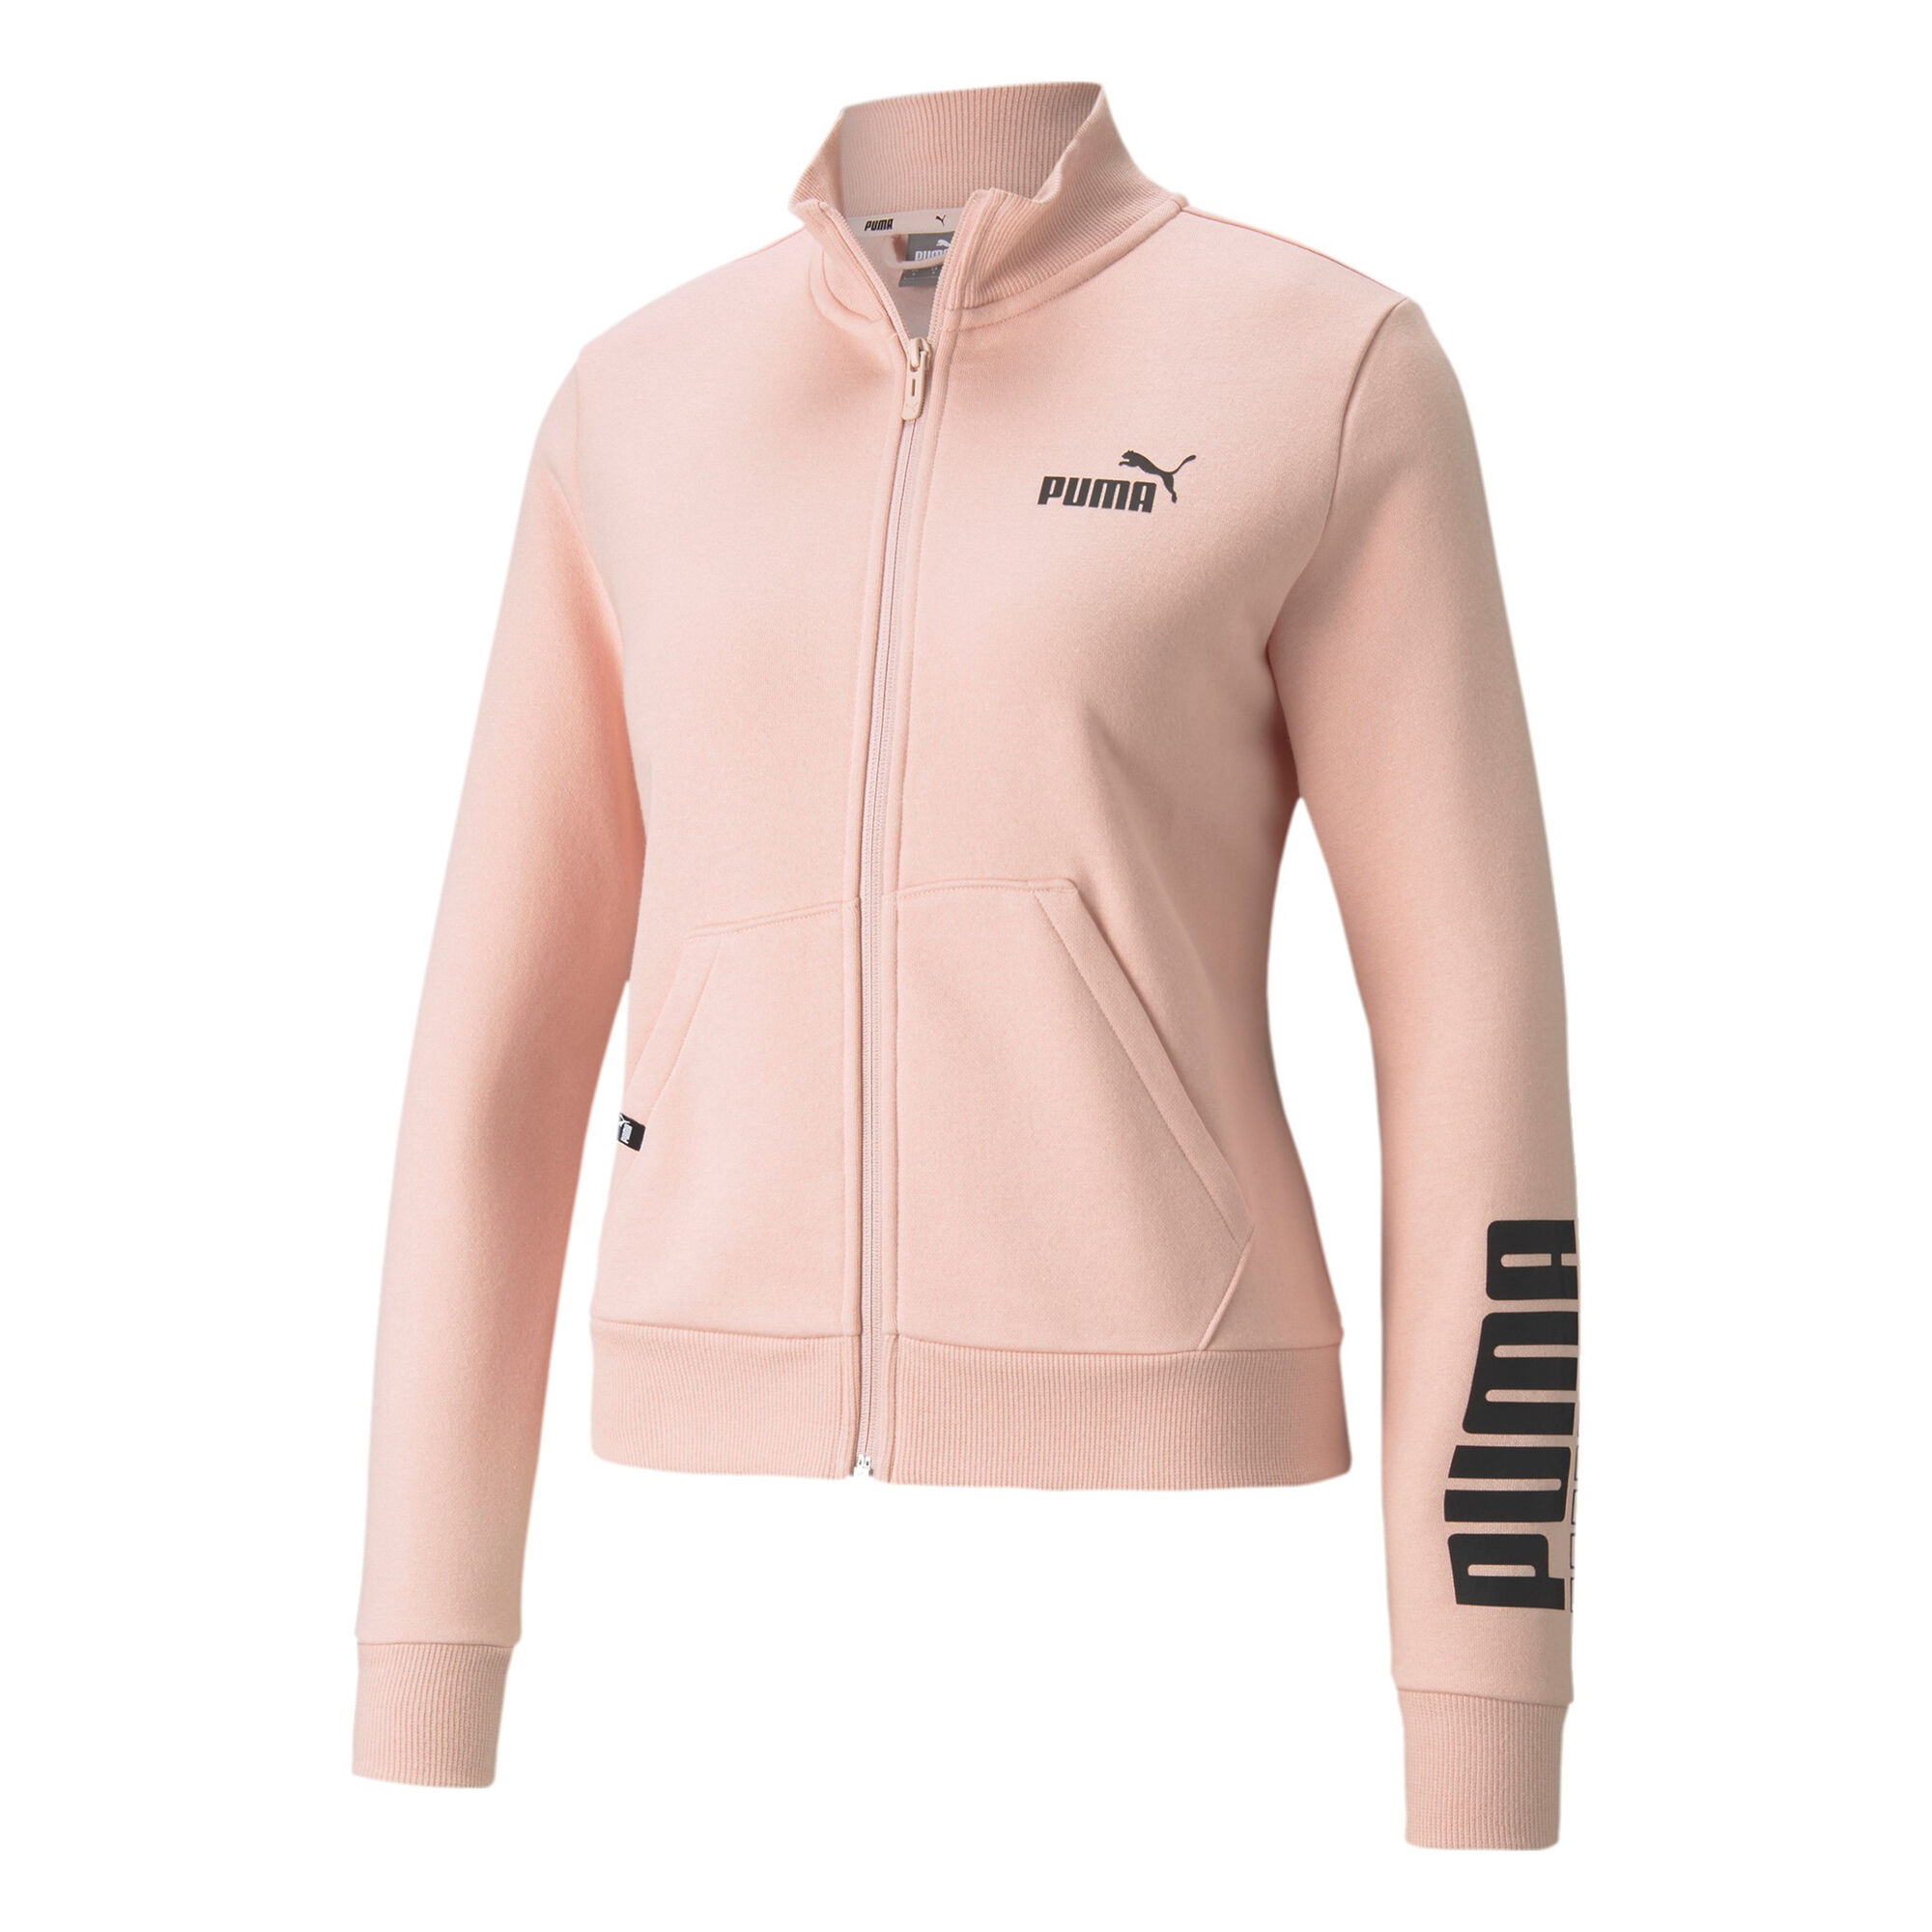 Puma Logo Træningsjakke Damer - Rosa, Sort køb online | Tennis-Point